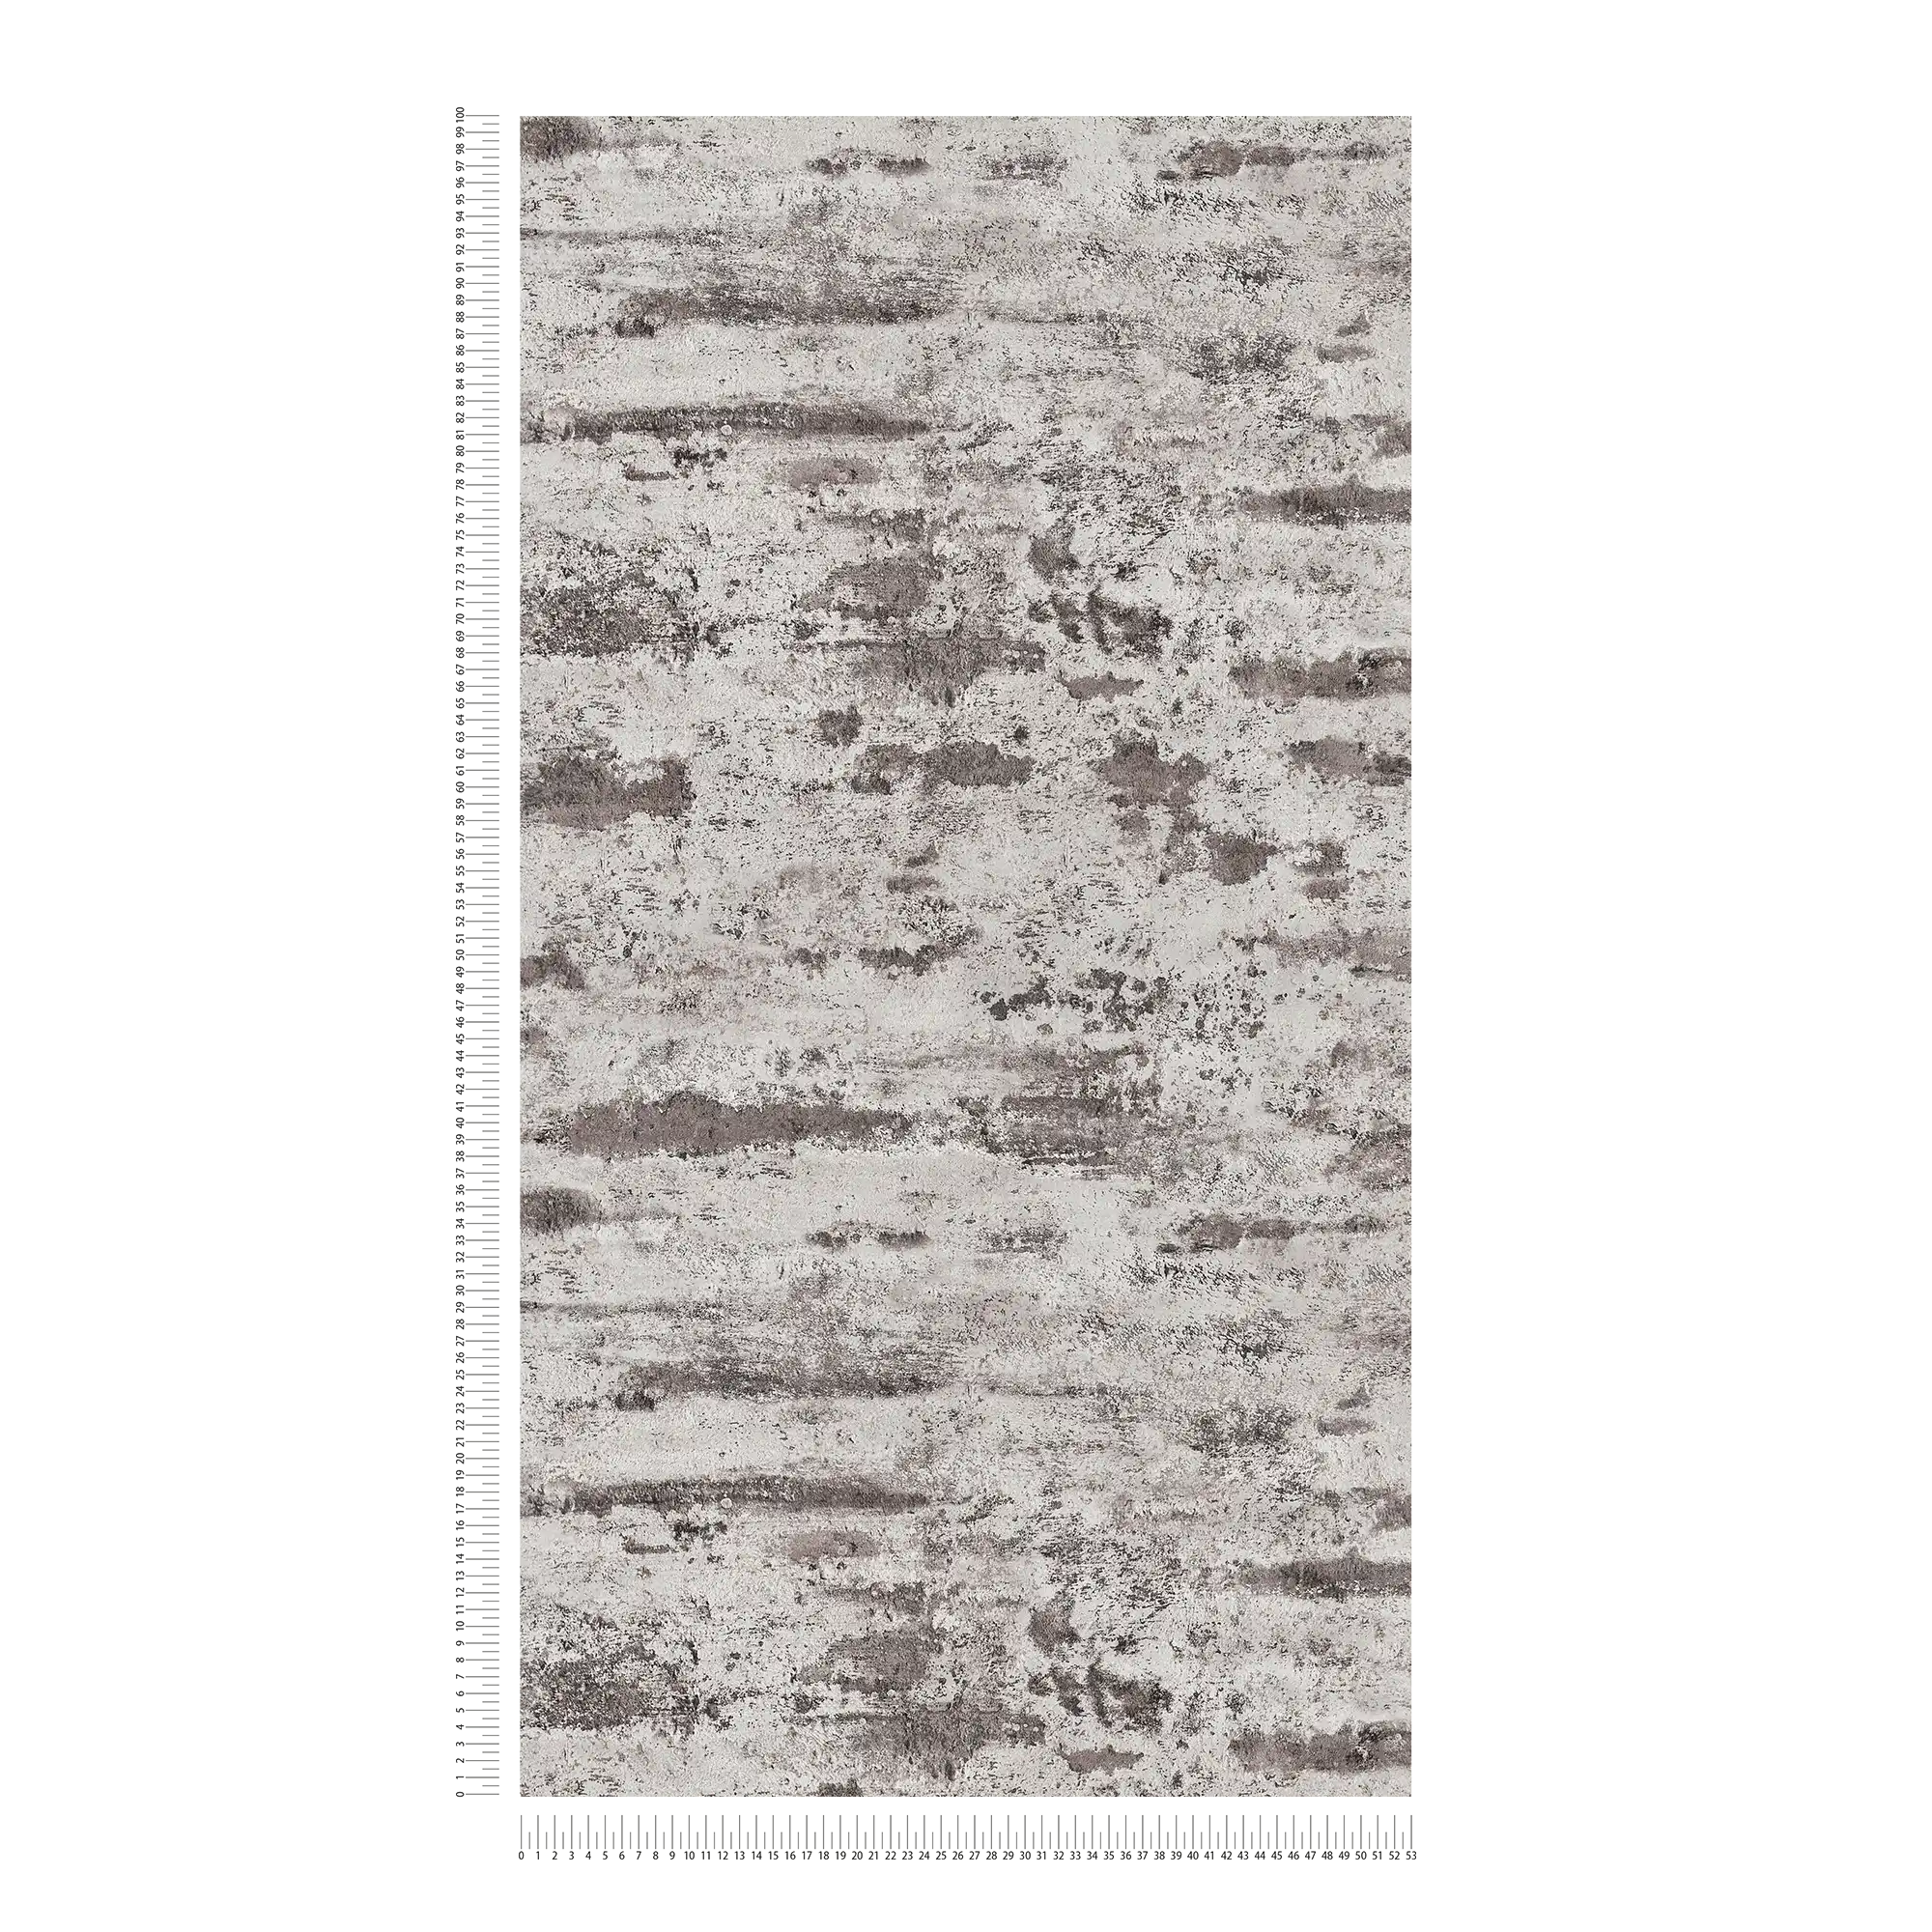             Carta da parati in tessuto non tessuto con motivo rustico, aspetto intonaco - grigio, nero
        